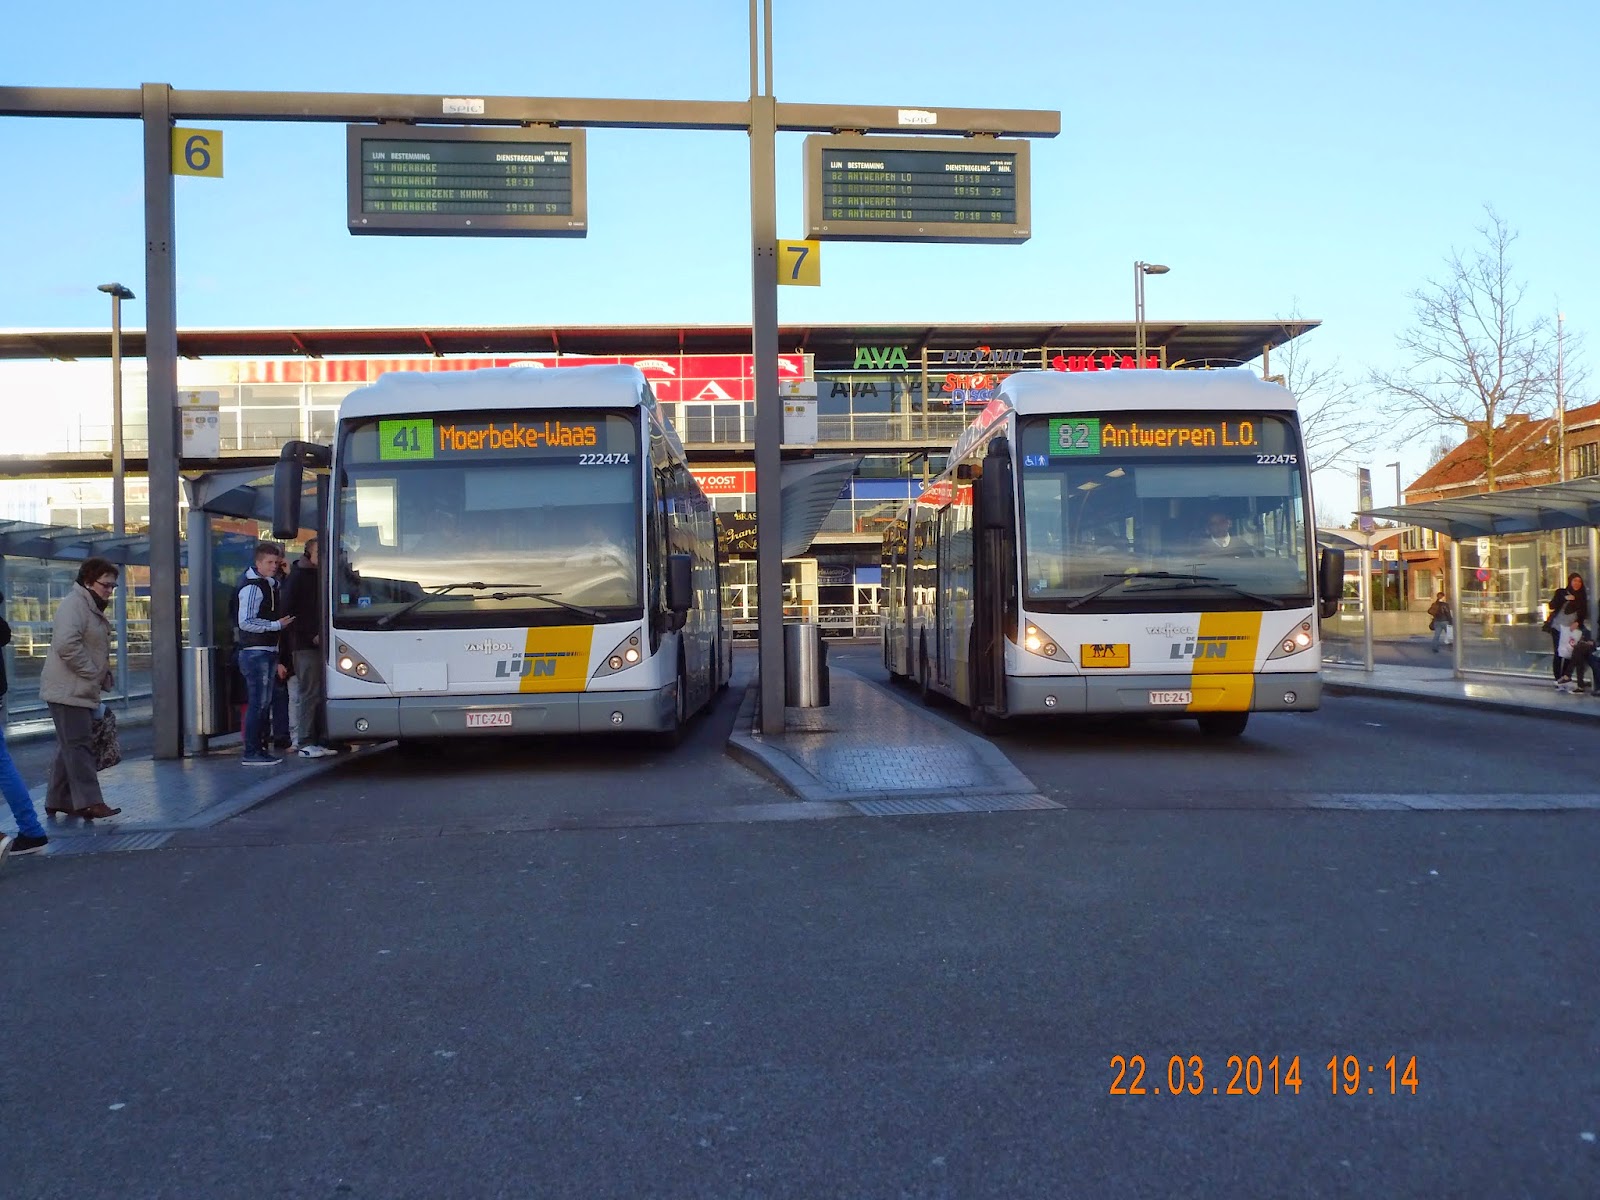 Diplomatie Overjas Aannemer busfoto's van de VVM (de lijn)